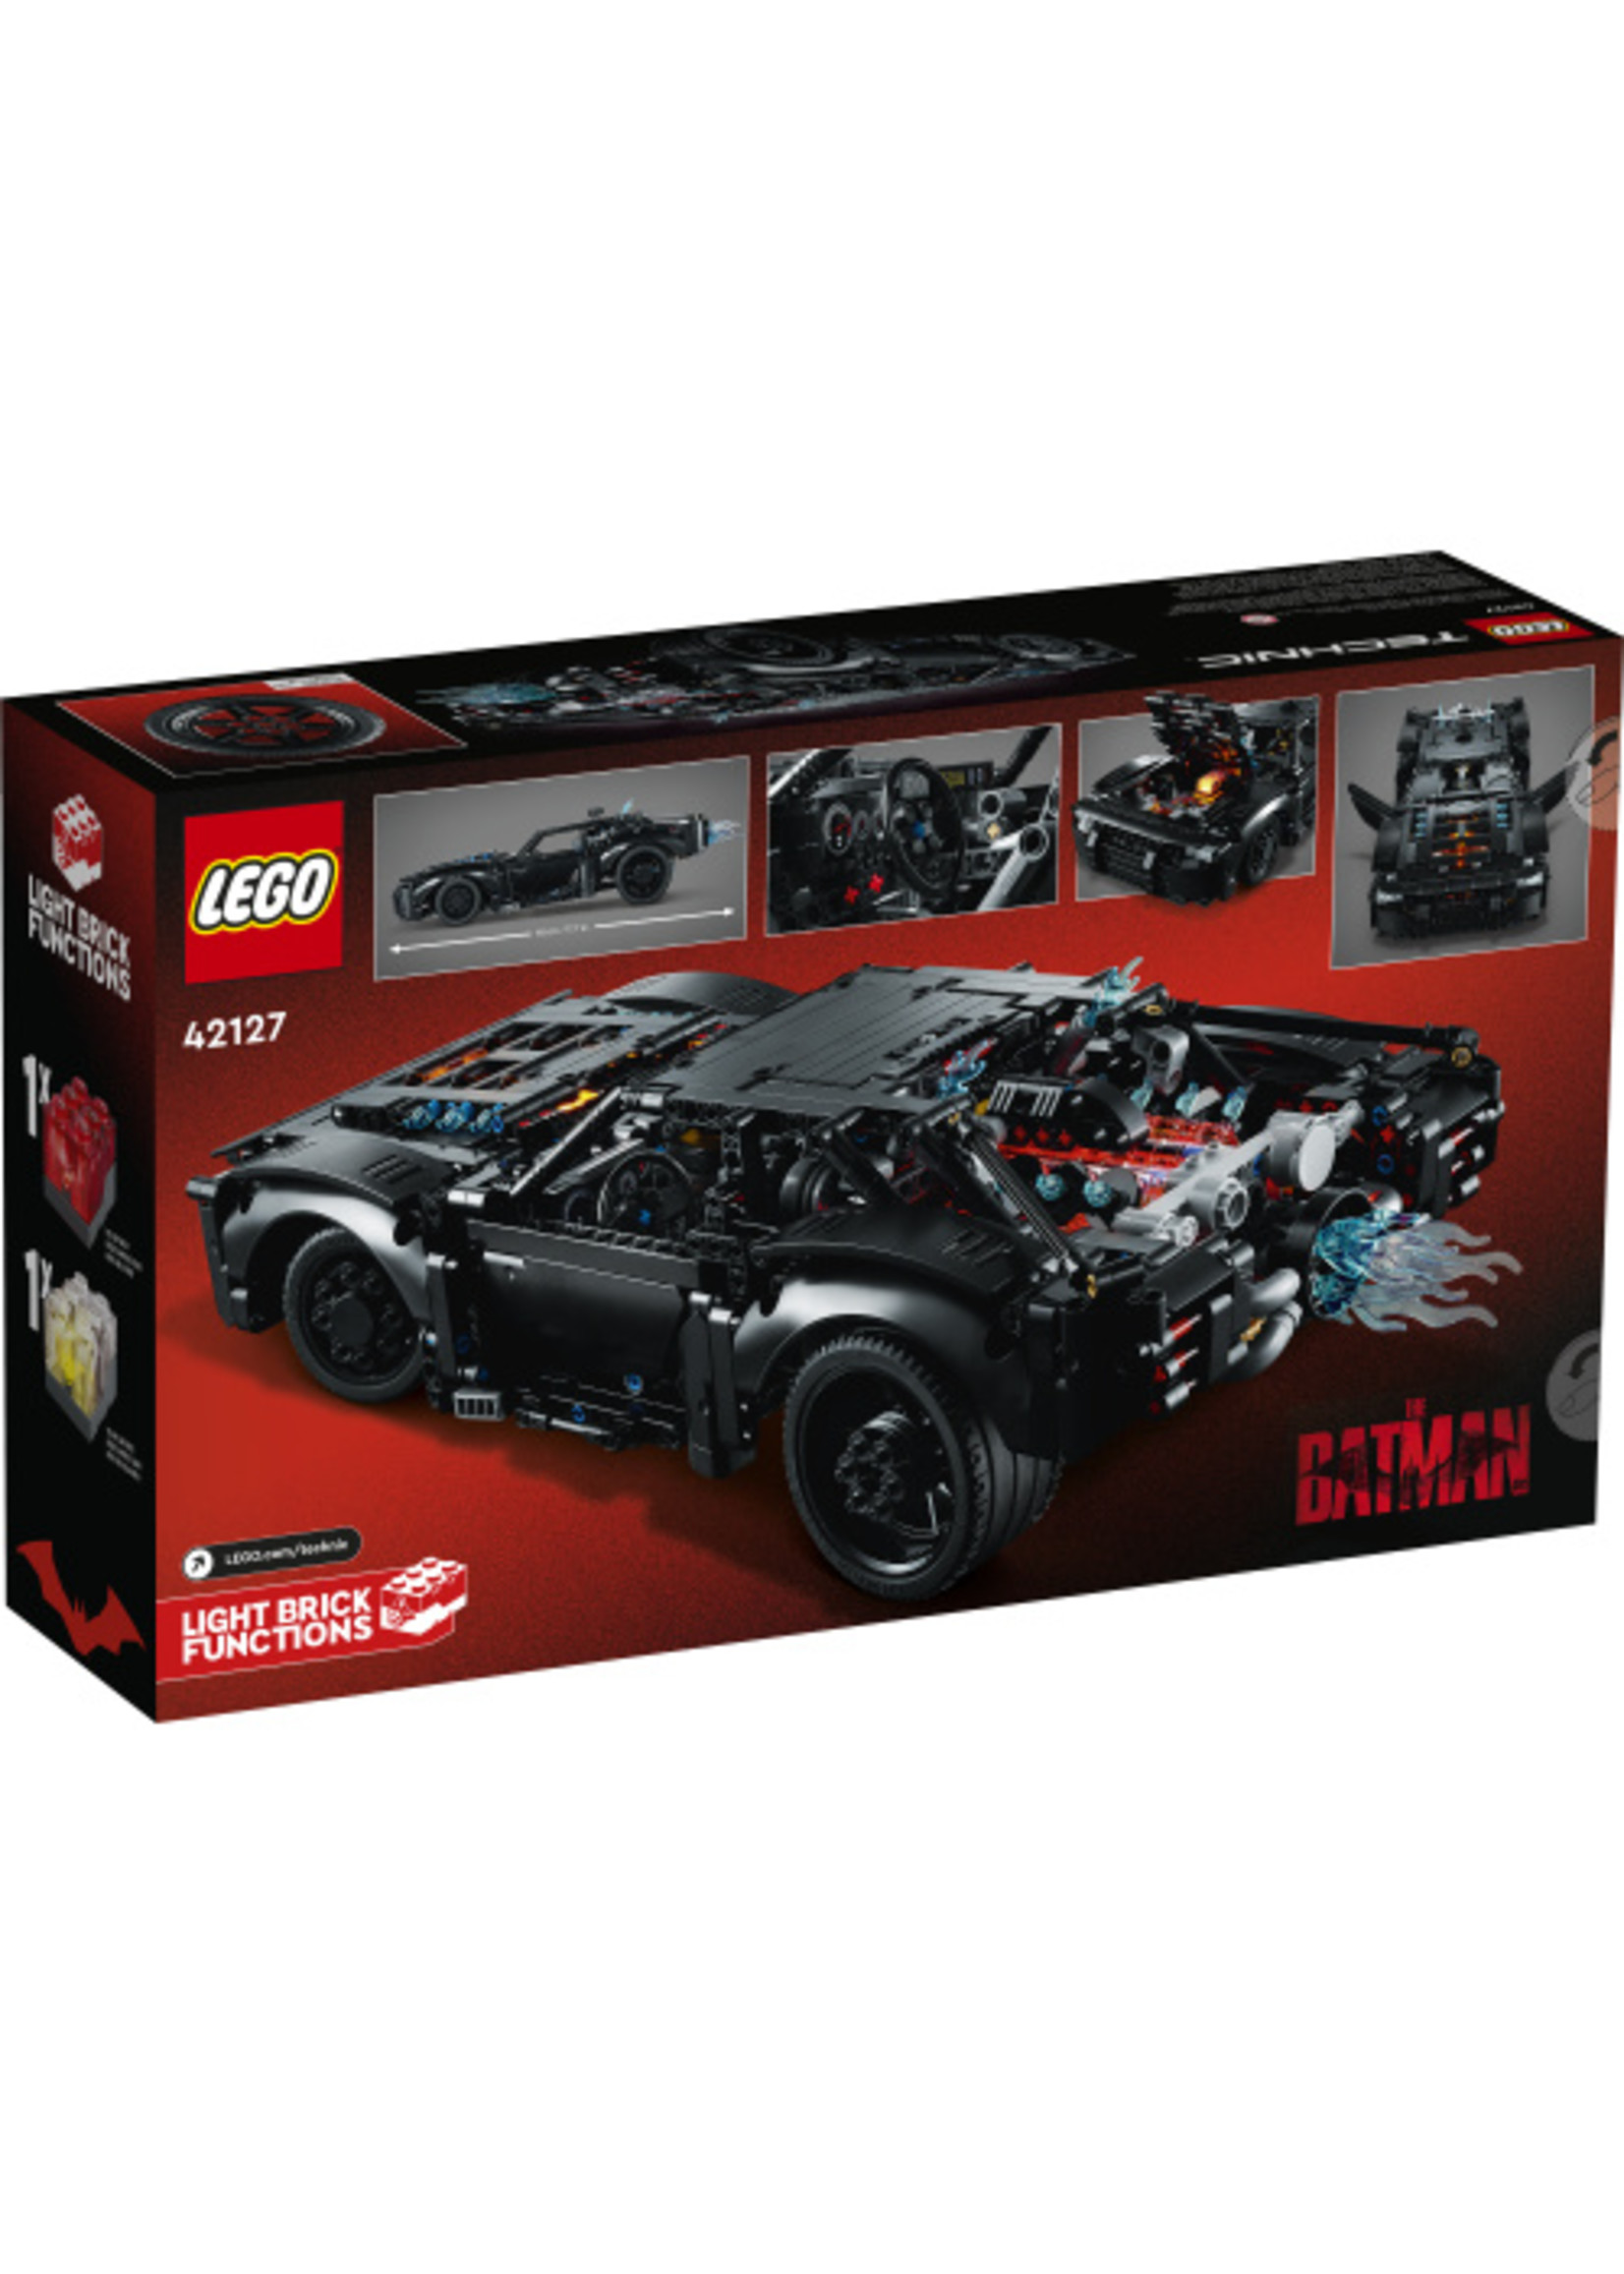 Lego 42127 - The Batman: Batmobile